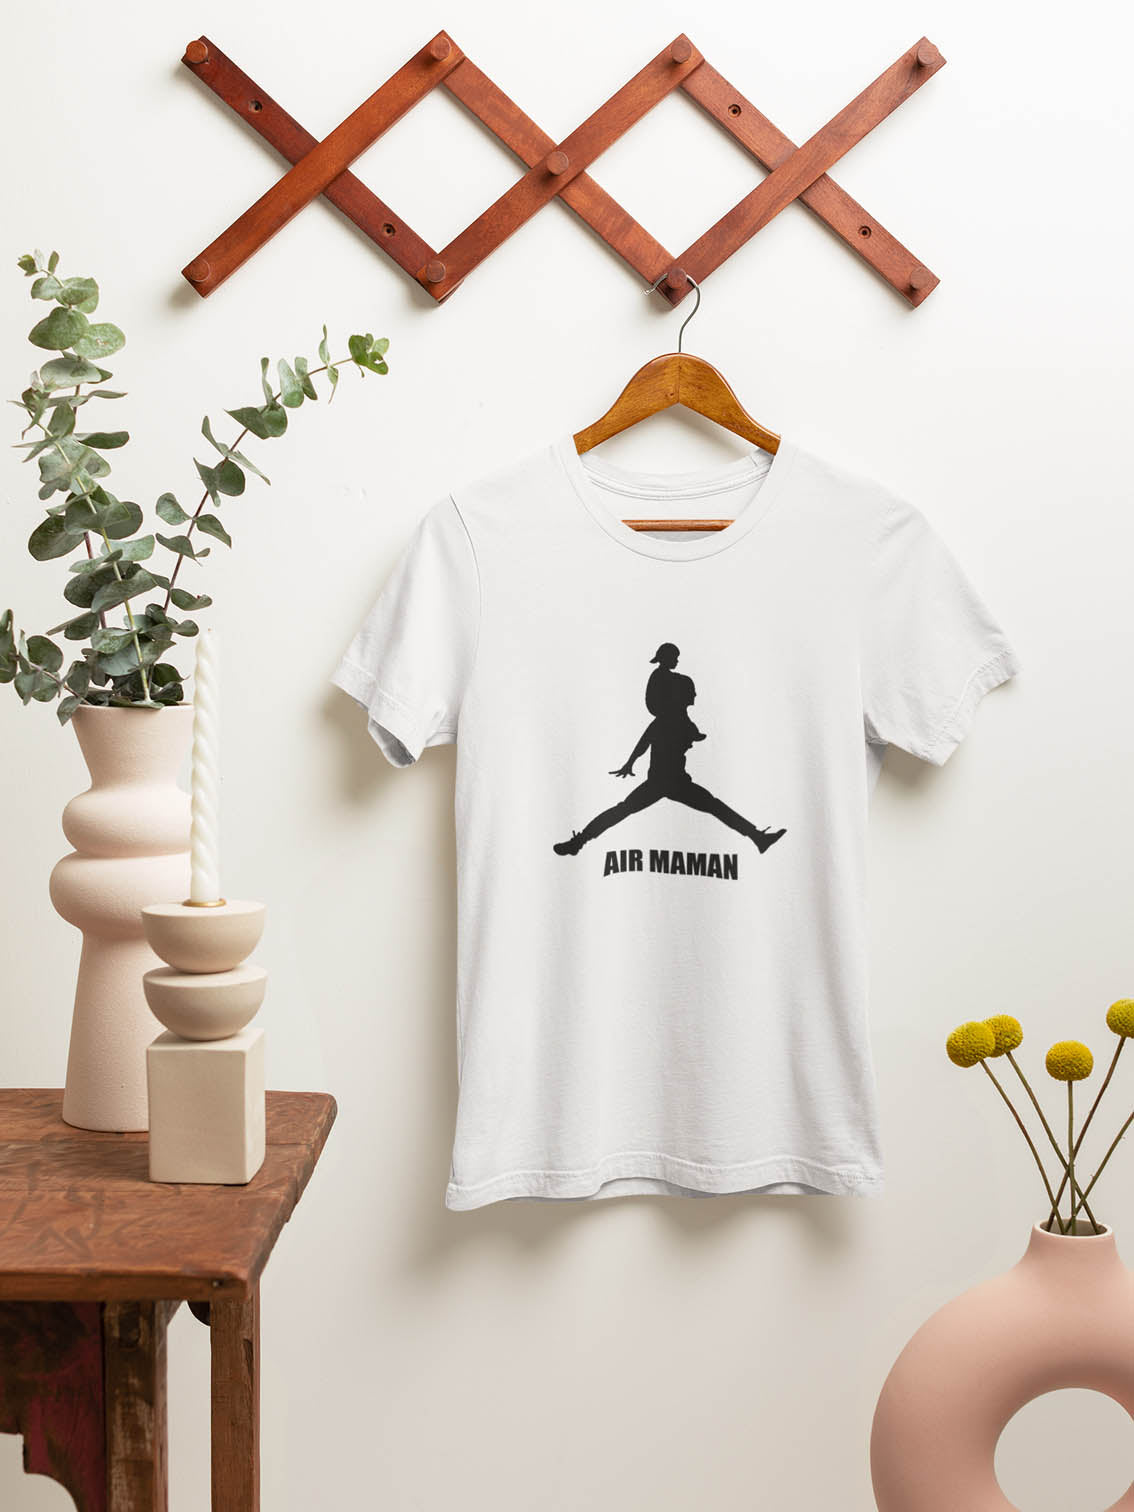 "Air Maman" women's/mother's t-shirt 